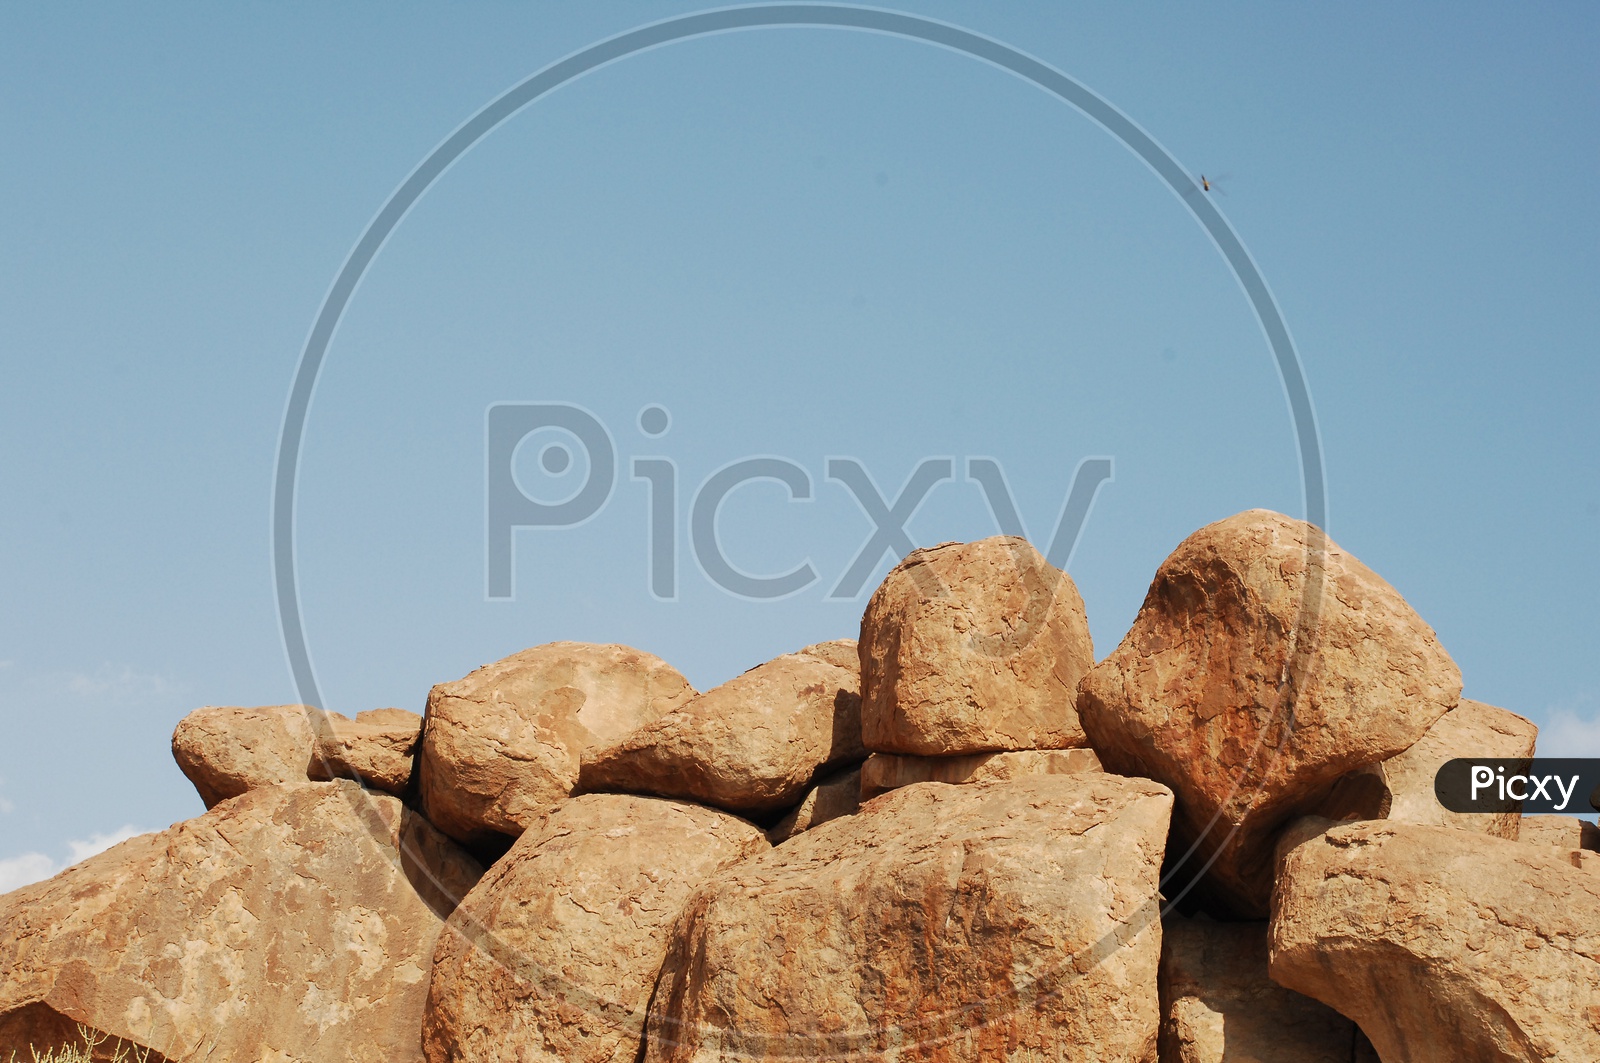 large rocks in an open area